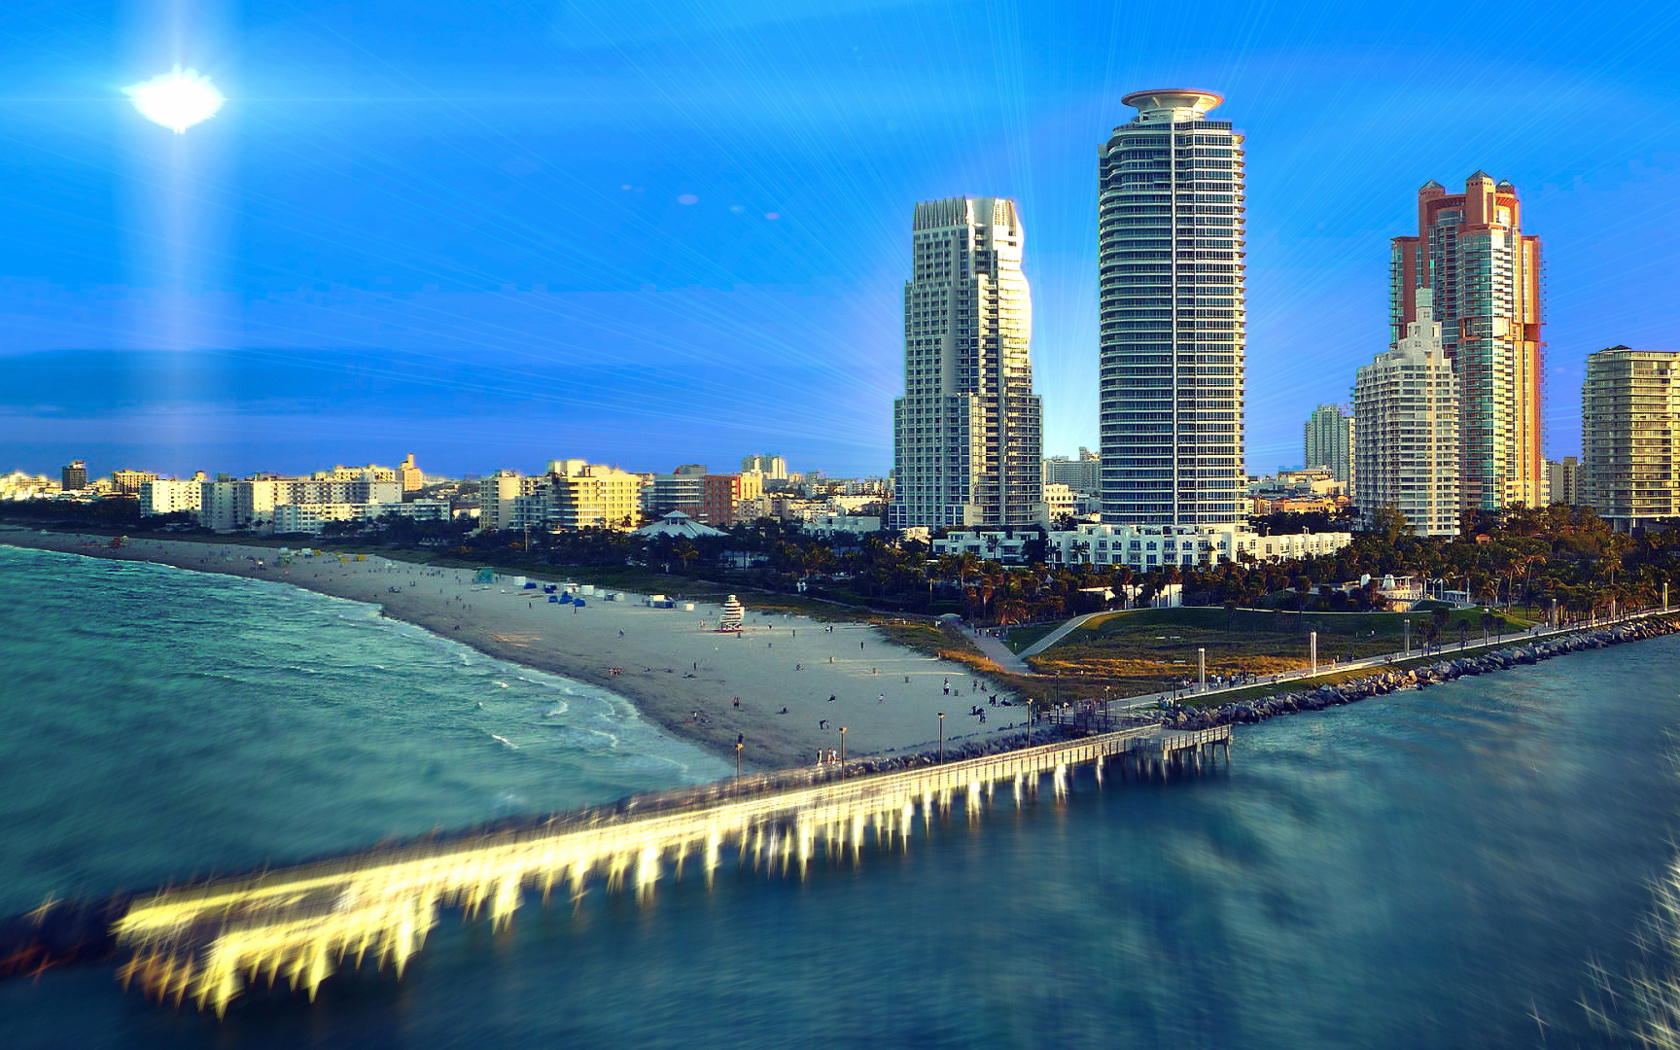 Обои Miami Beach with Hotels 1680x1050